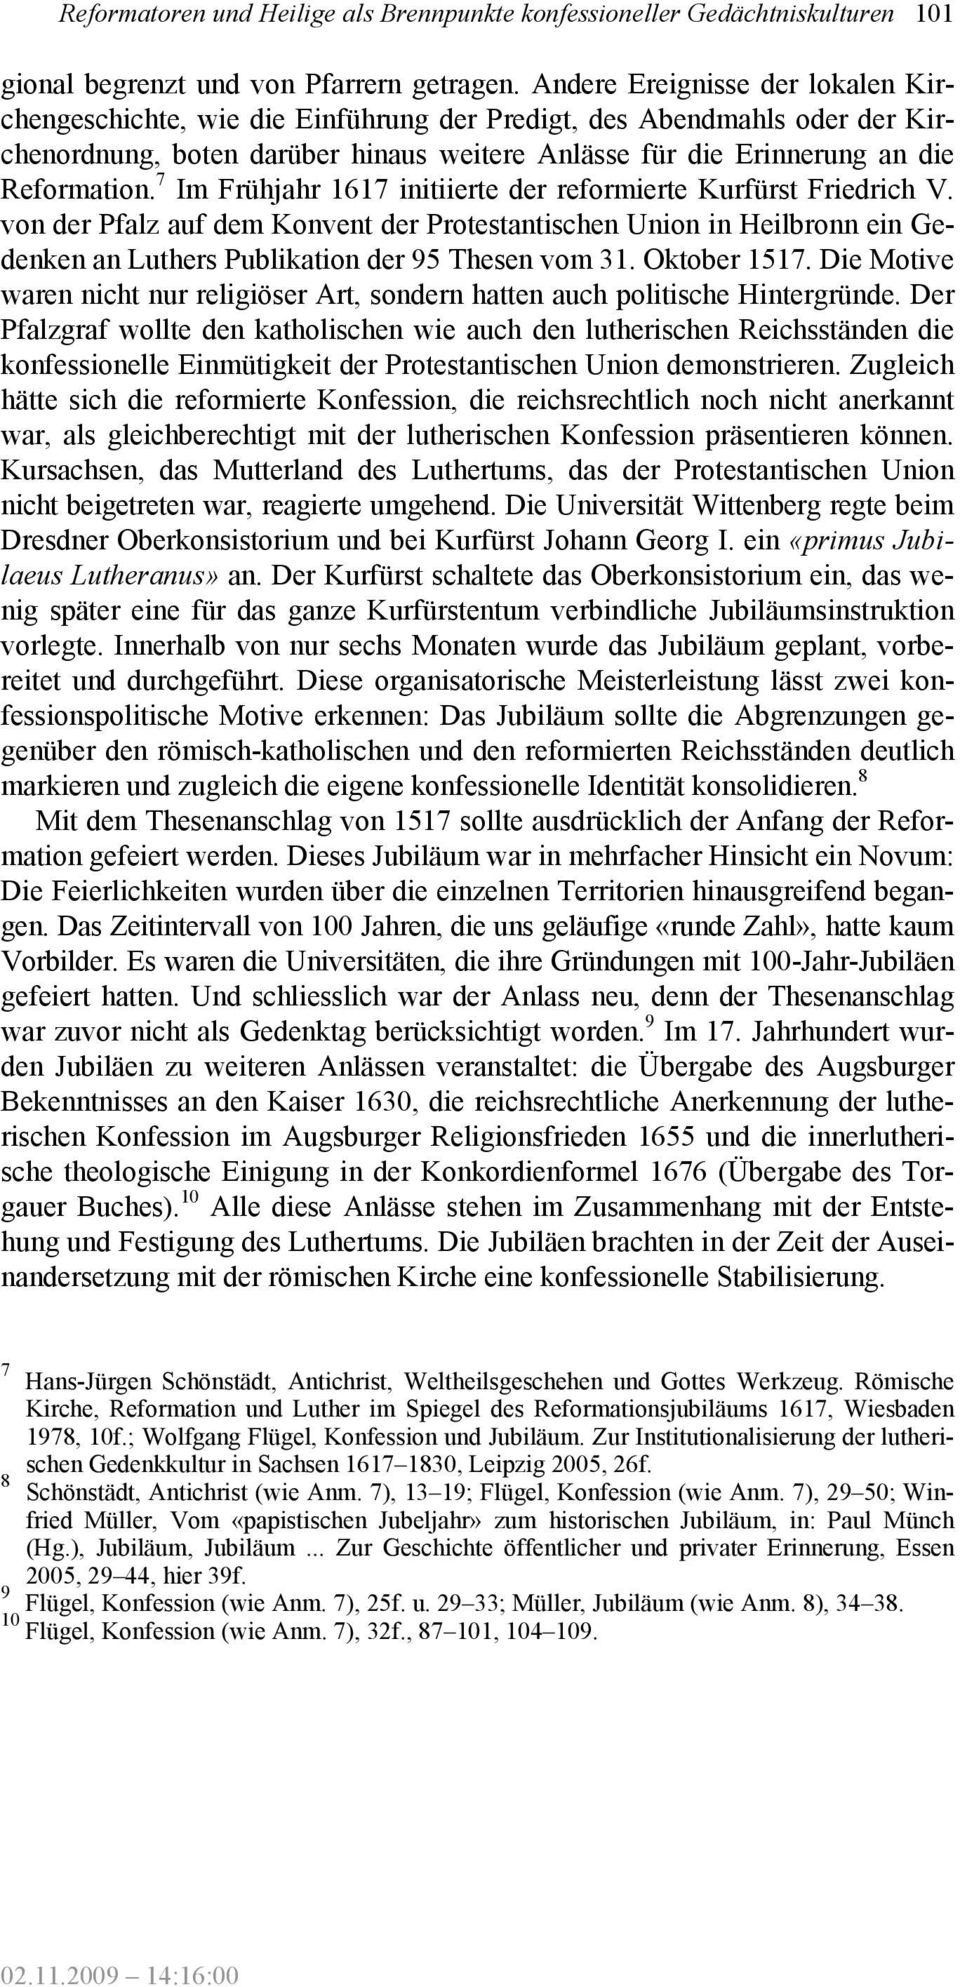 7 Im Frühjahr 1617 initiierte der reformierte Kurfürst Friedrich V. von der Pfalz auf dem Konvent der Protestantischen Union in Heilbronn ein Gedenken an Luthers Publikation der 95 Thesen vom 31.